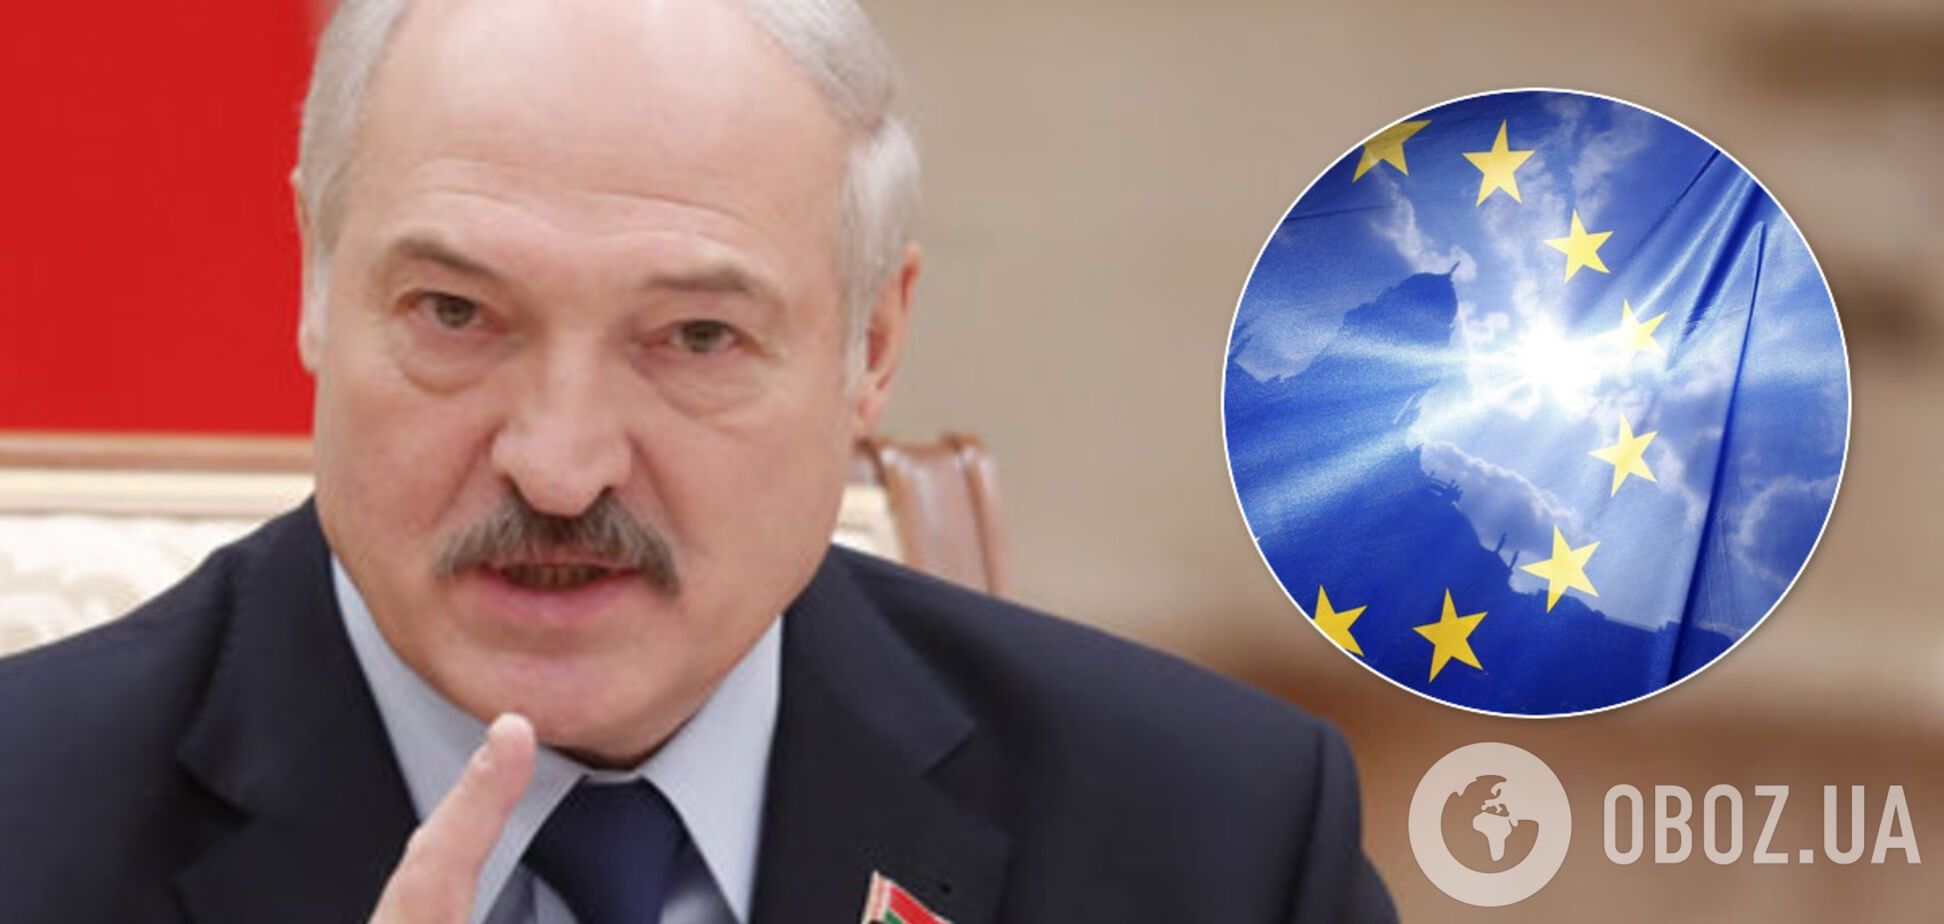 ЄС вдарив санкціями по Білорусі: з'явилася офіційна реакція Мінська